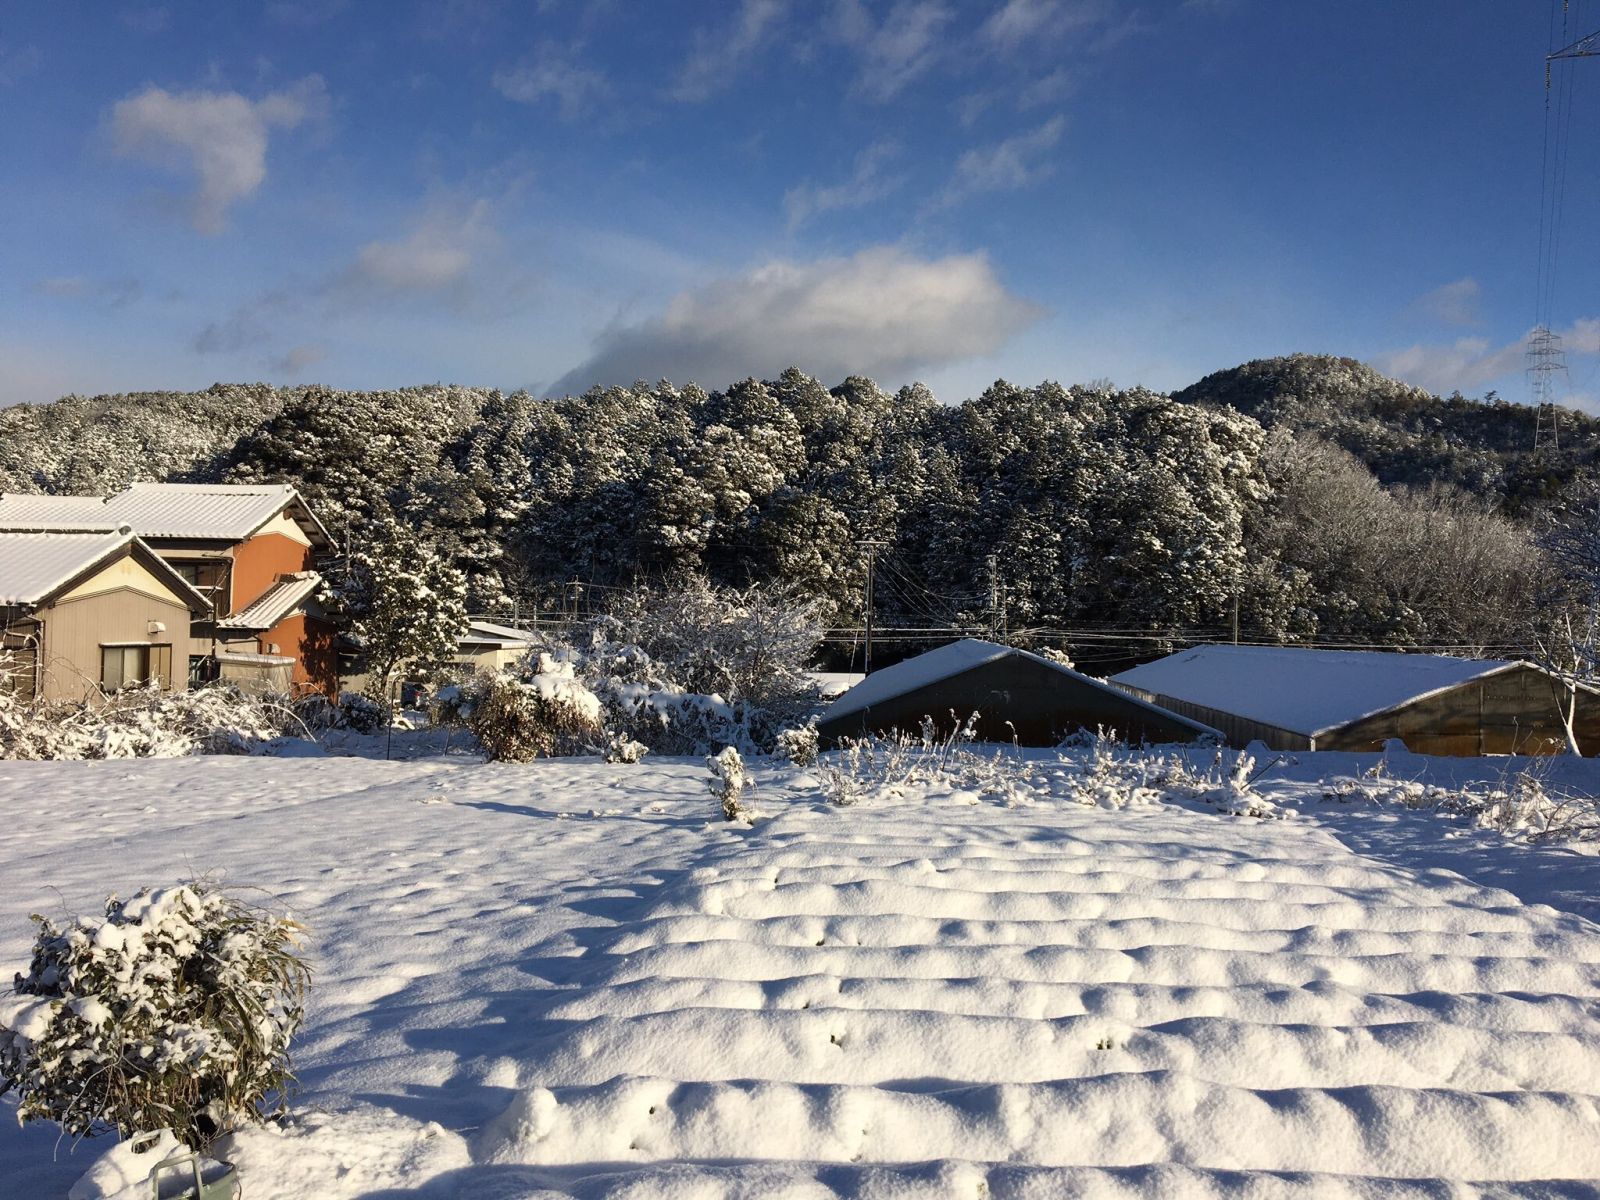 Снігопад в Японії. Фото: Twitter